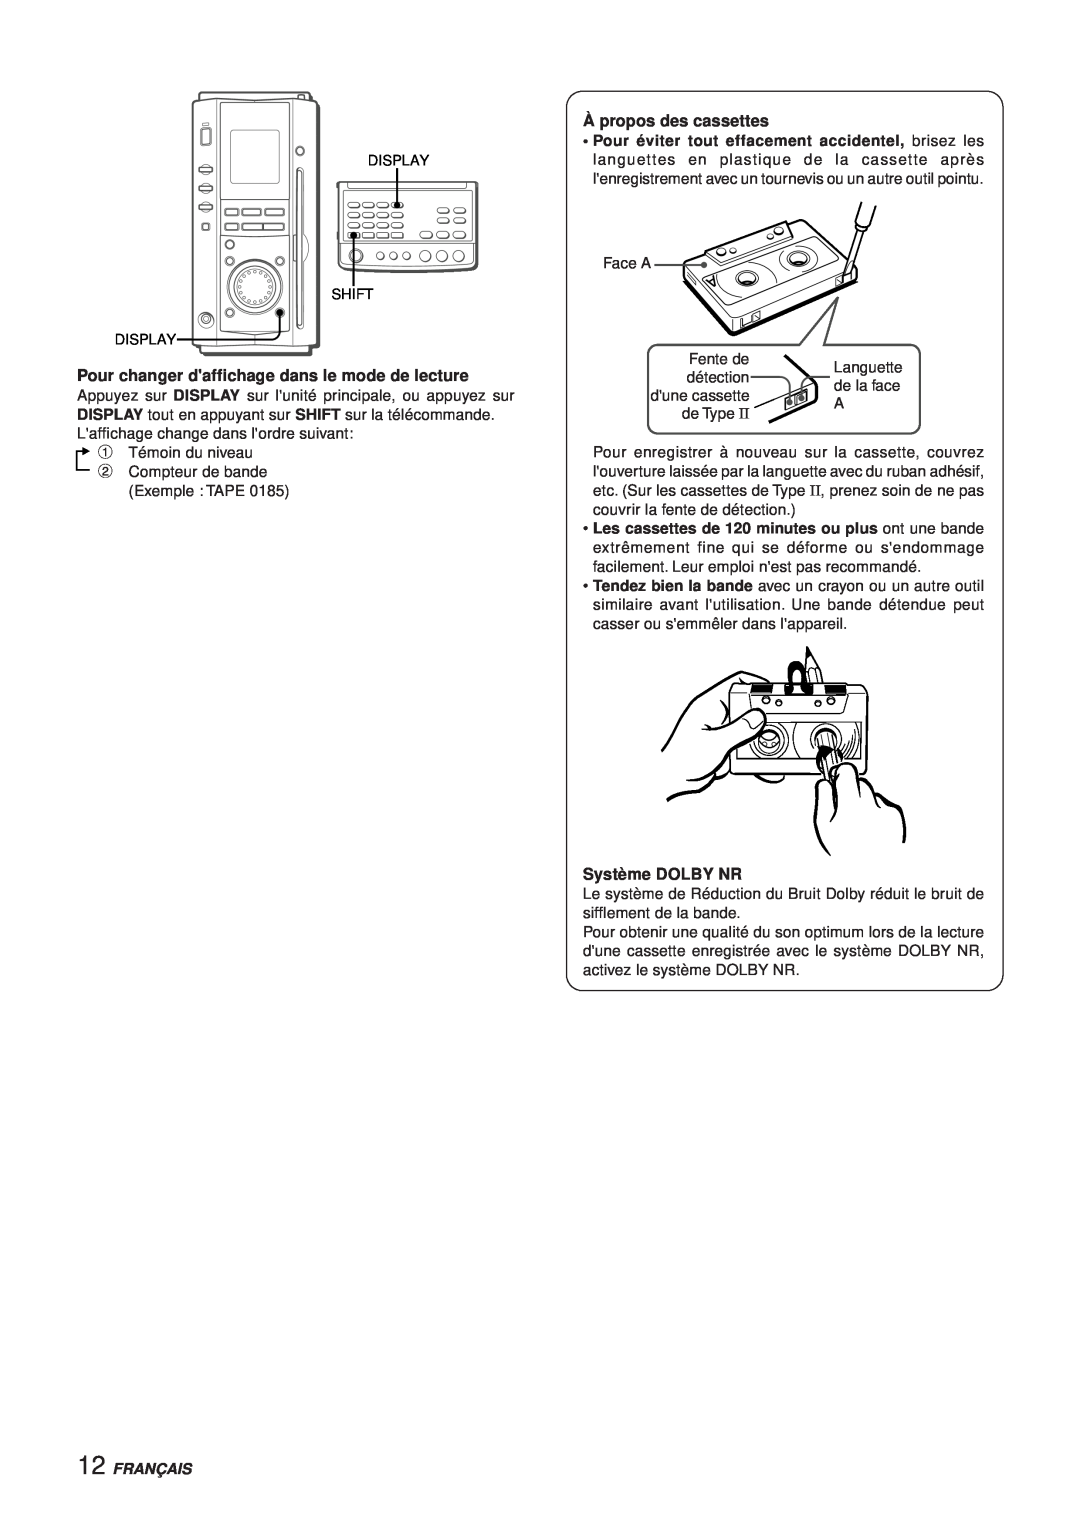 Aiwa XR-MS3 manual Pour changer daffichage dans le mode de lecture, À propos des cassettes, Système DOLBY NR, Français 